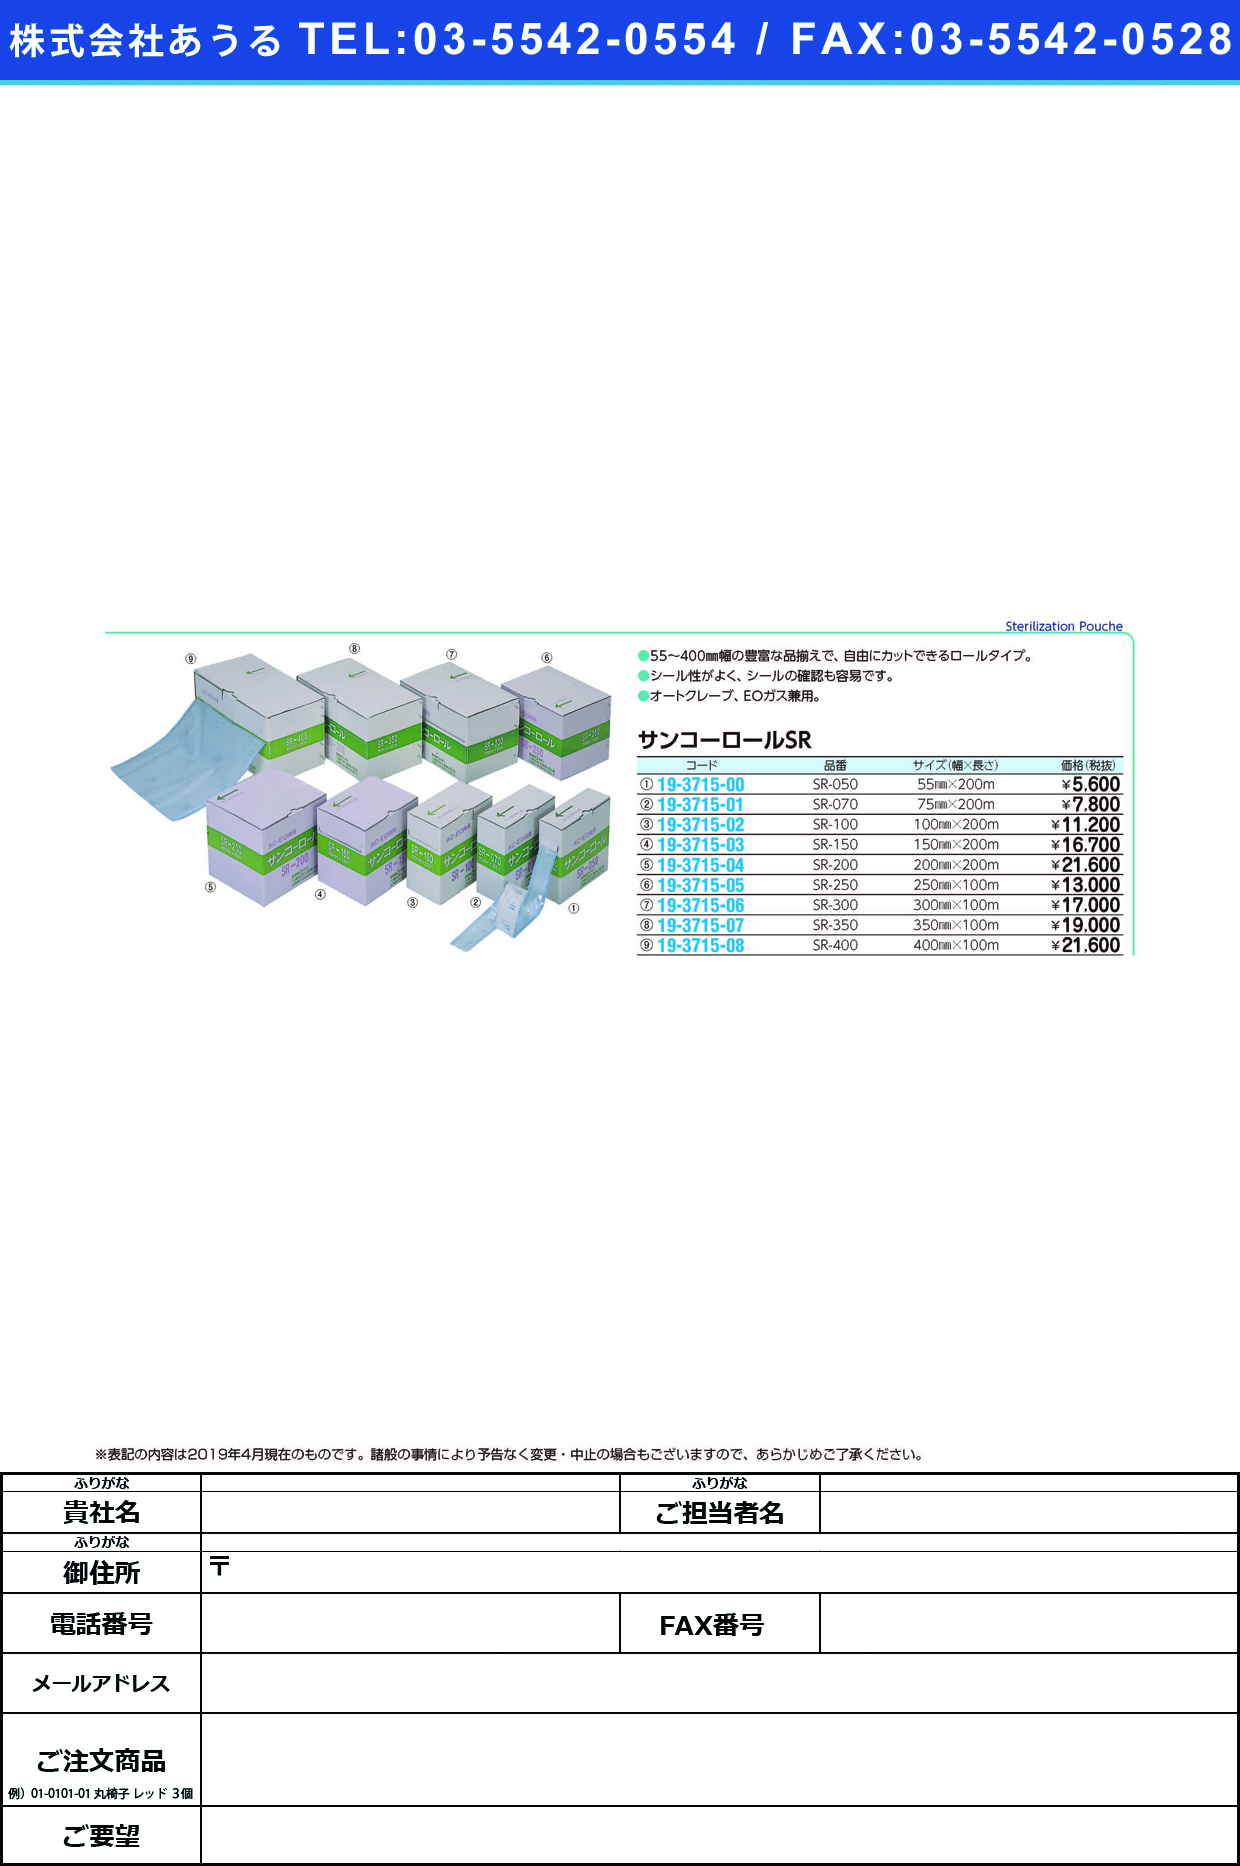 (19-3715-00)サンコーロール SR-050(55MMX200M) ｻﾝｺｰﾛｰﾙ(三興化学工業)【1巻単位】【2019年カタログ商品】